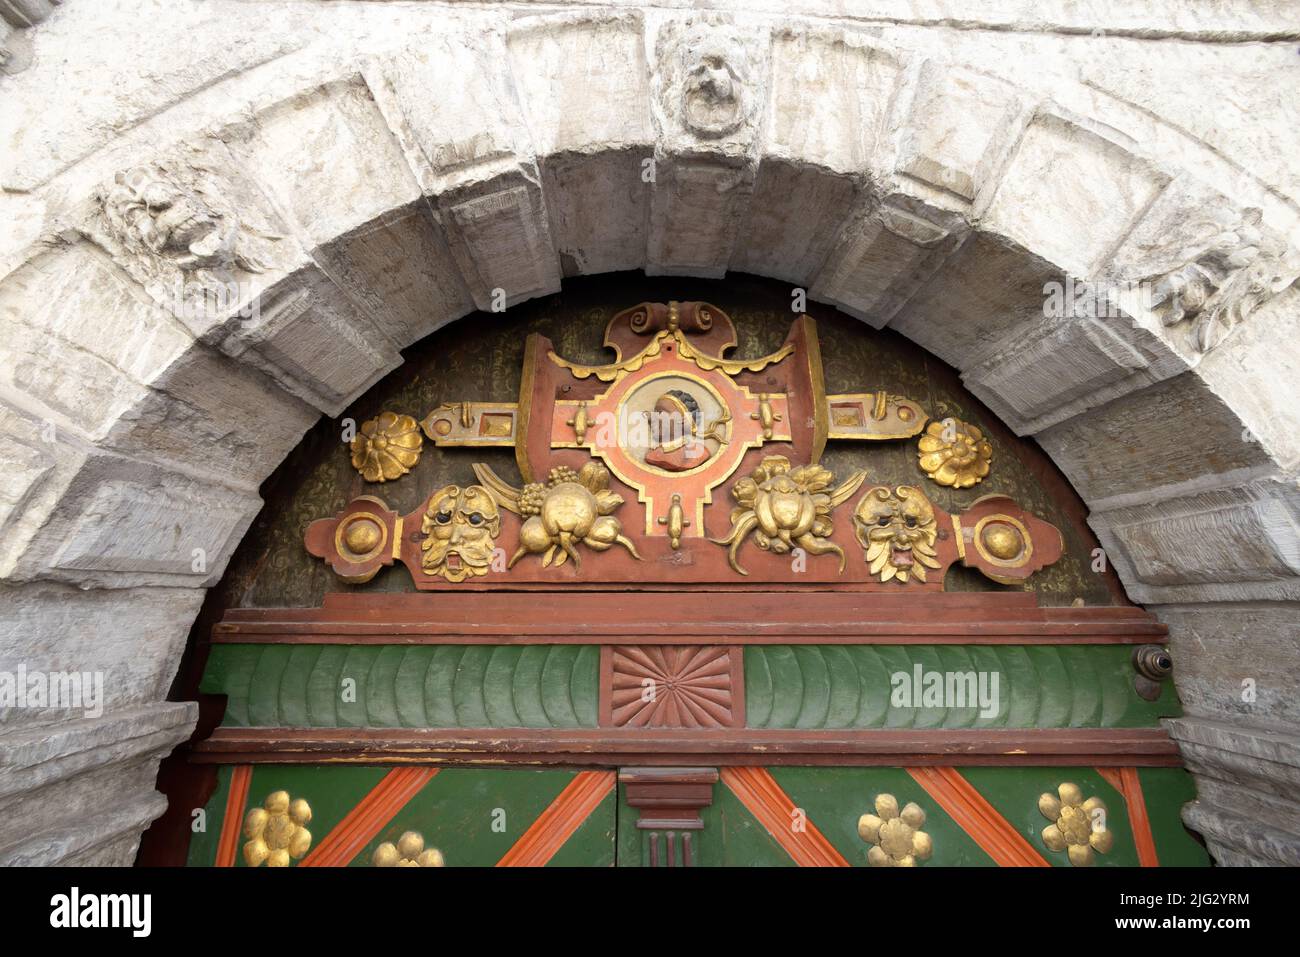 Gros plan des symboles au-dessus de la porte; Maison de la Fraternité des Blackheads, vieille ville de Tallinn, Tallinn Estonie Banque D'Images